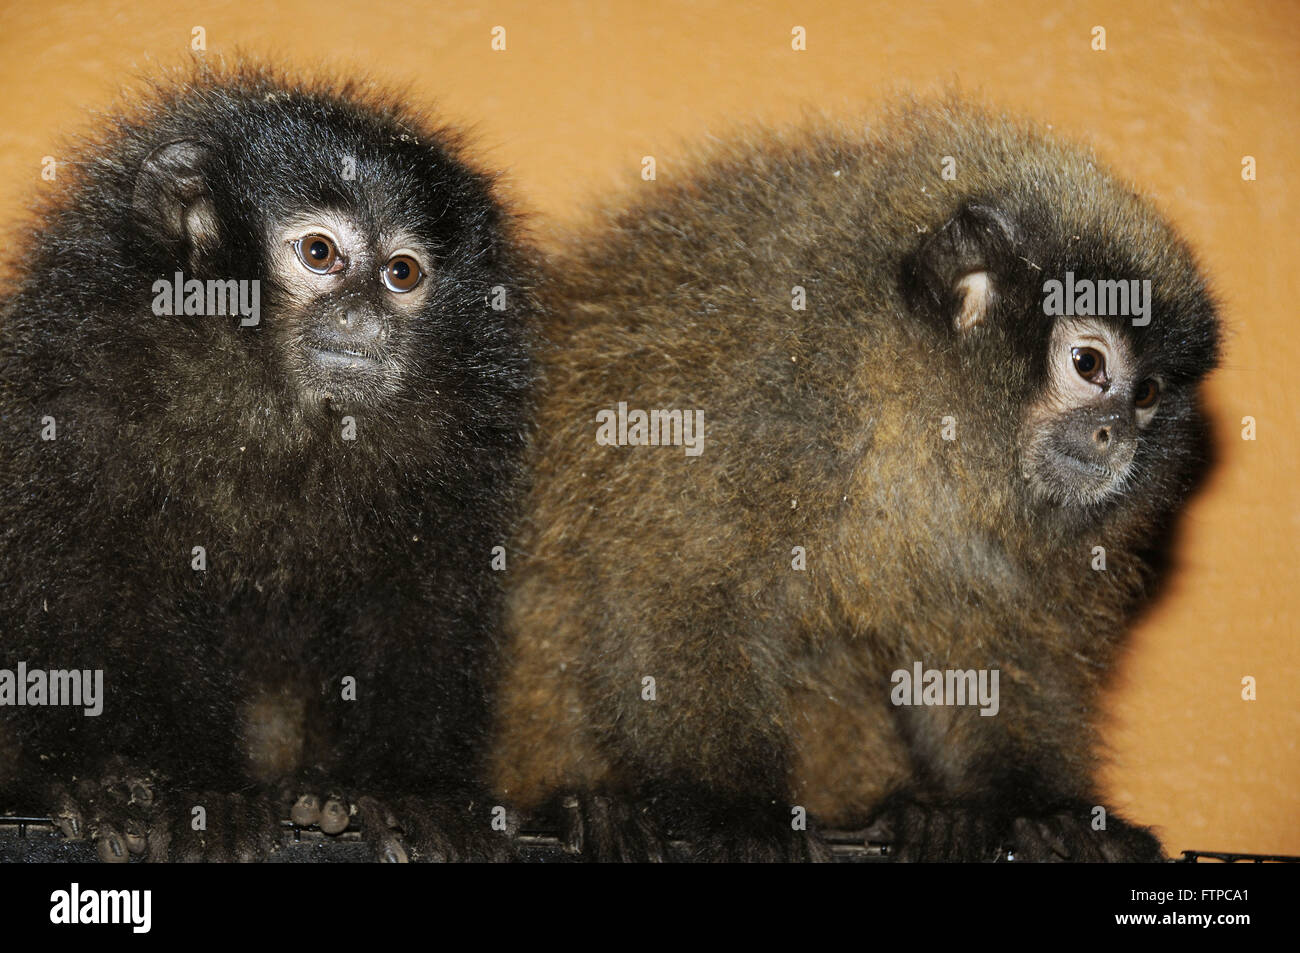 Titi - forest primates of the genus Callicebus - Zooparque Itatiba Stock Photo